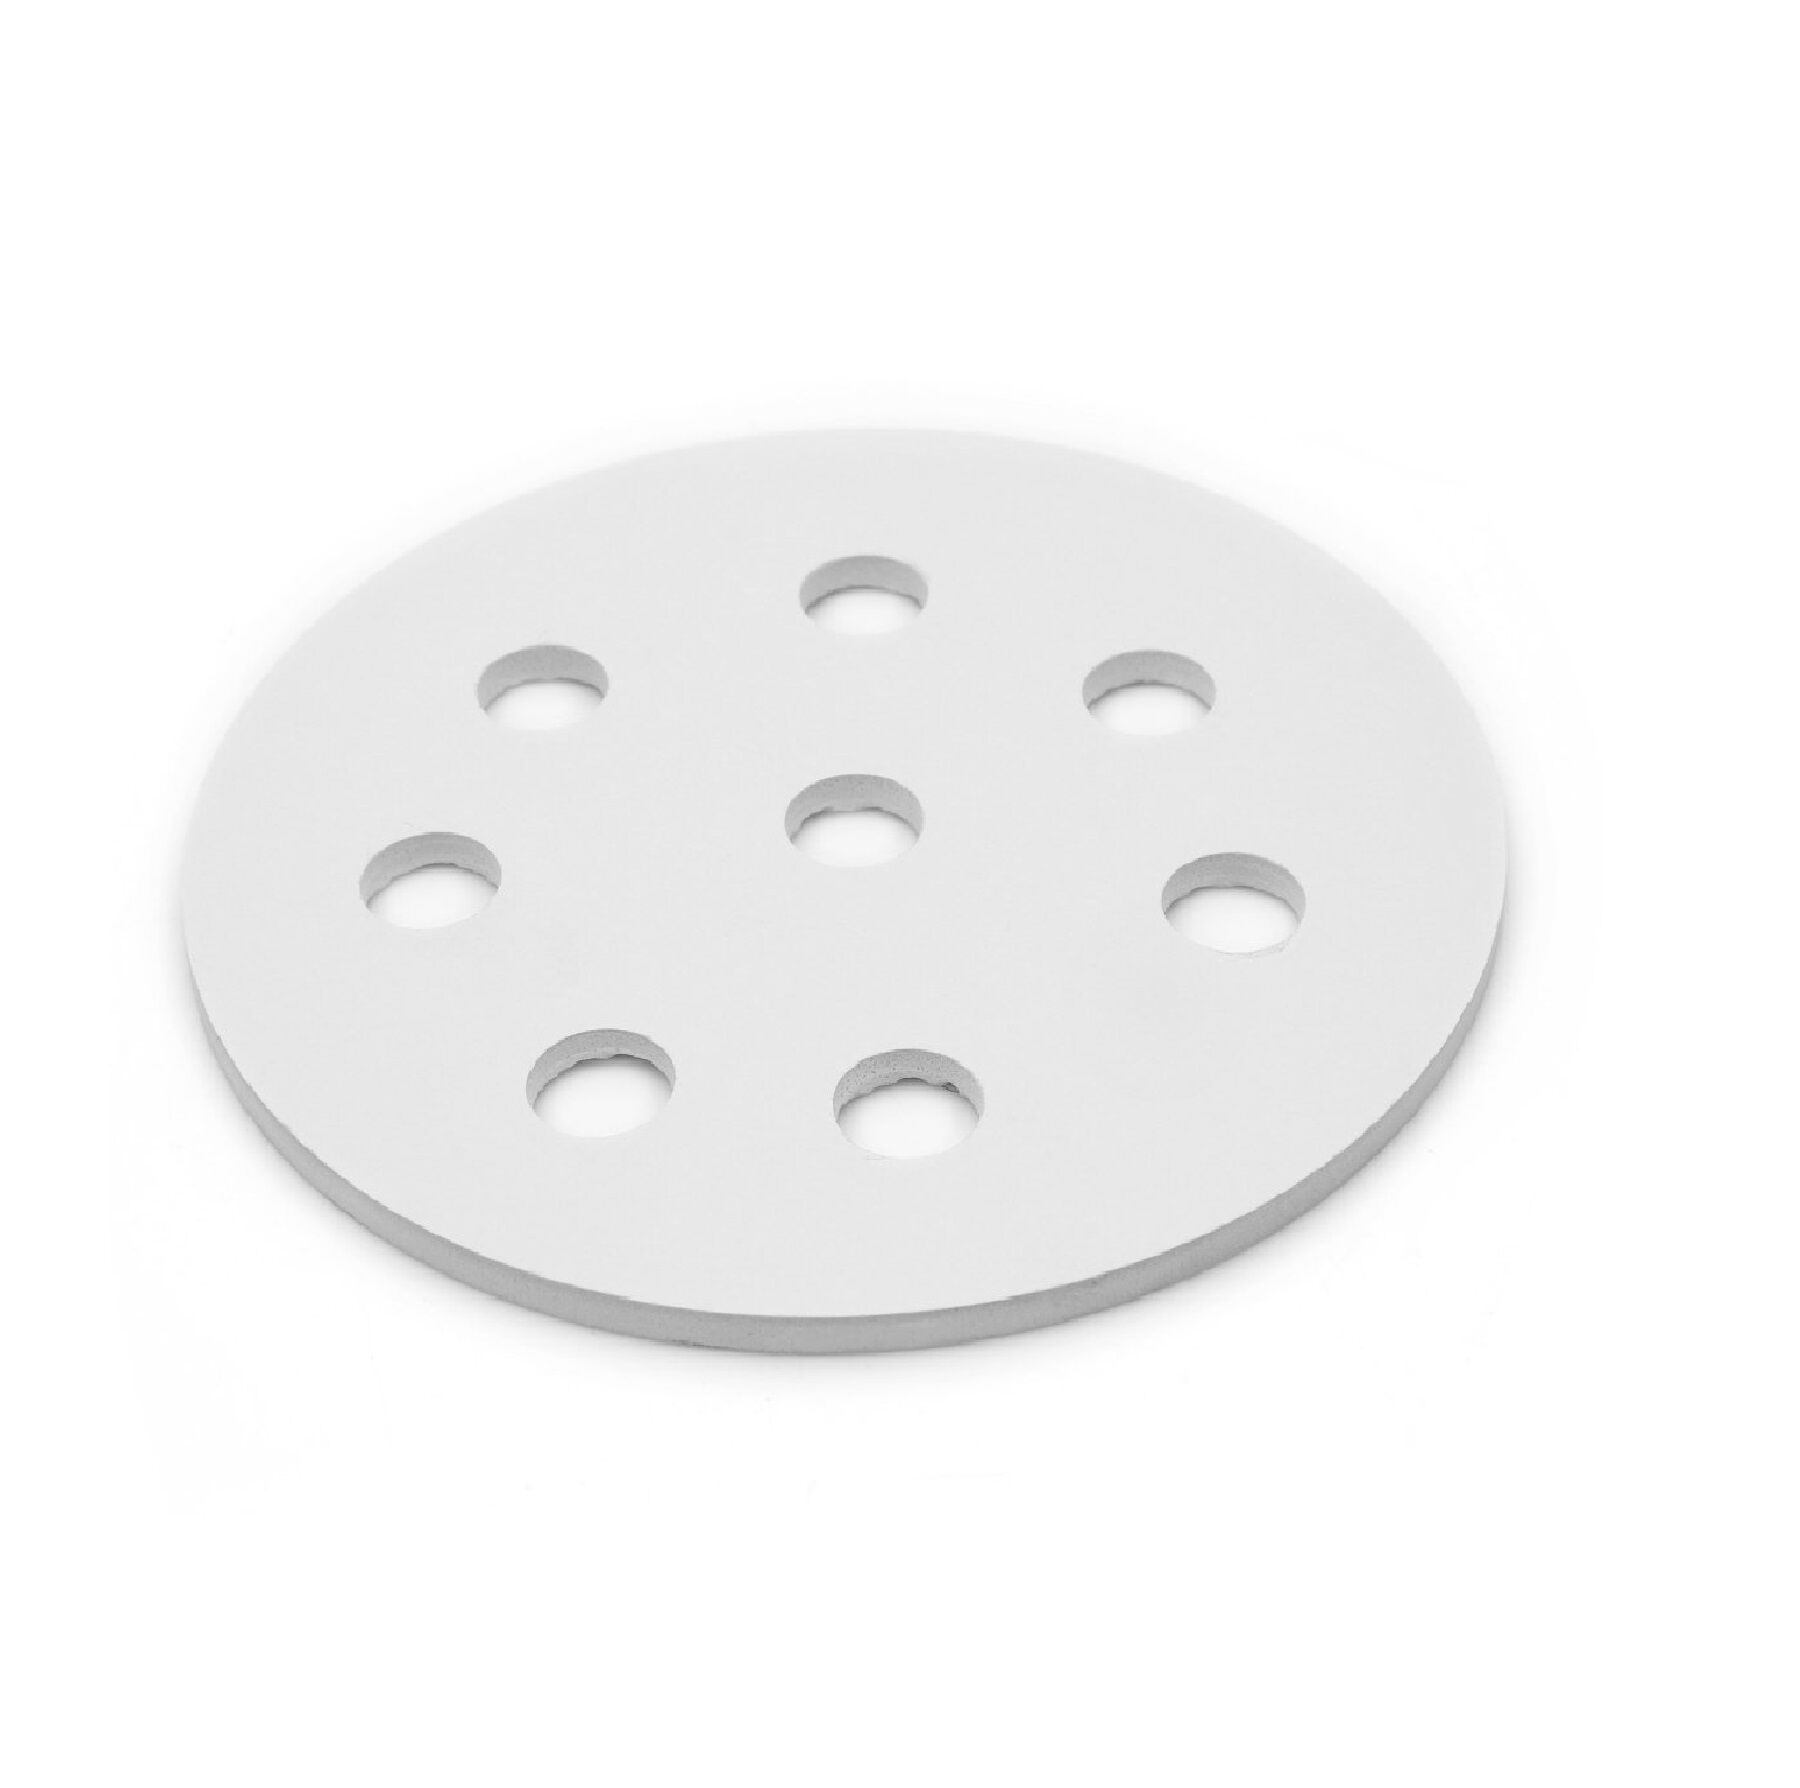 Porselen Disk-Desikatör Plakası- 300 mm- Porselain Plate For Dessicator